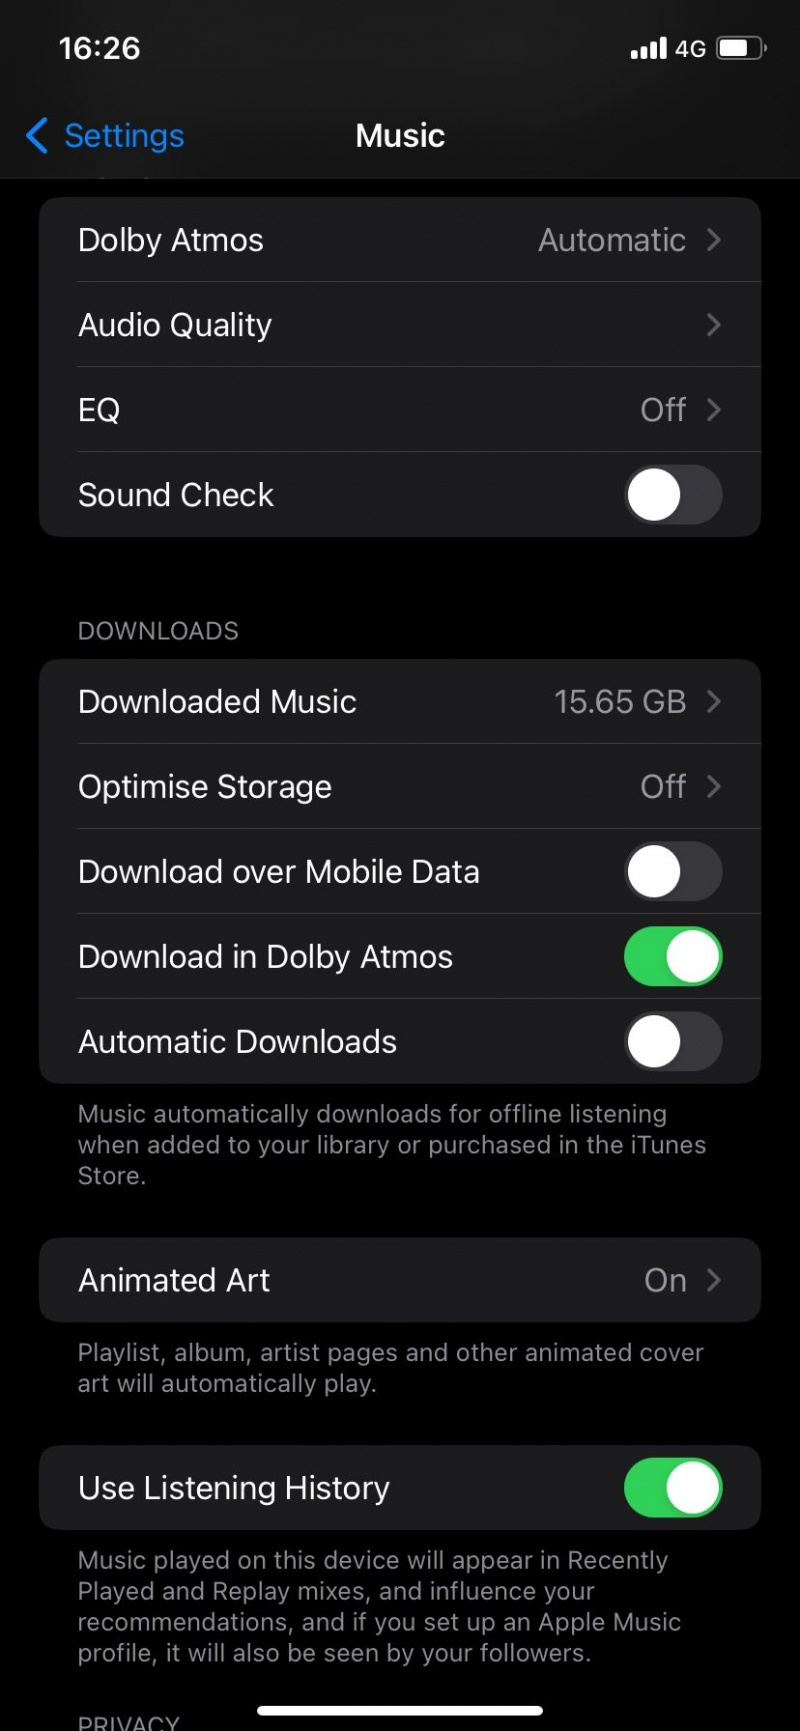   Descărcarea prin date mobile este dezactivată pe Apple Music